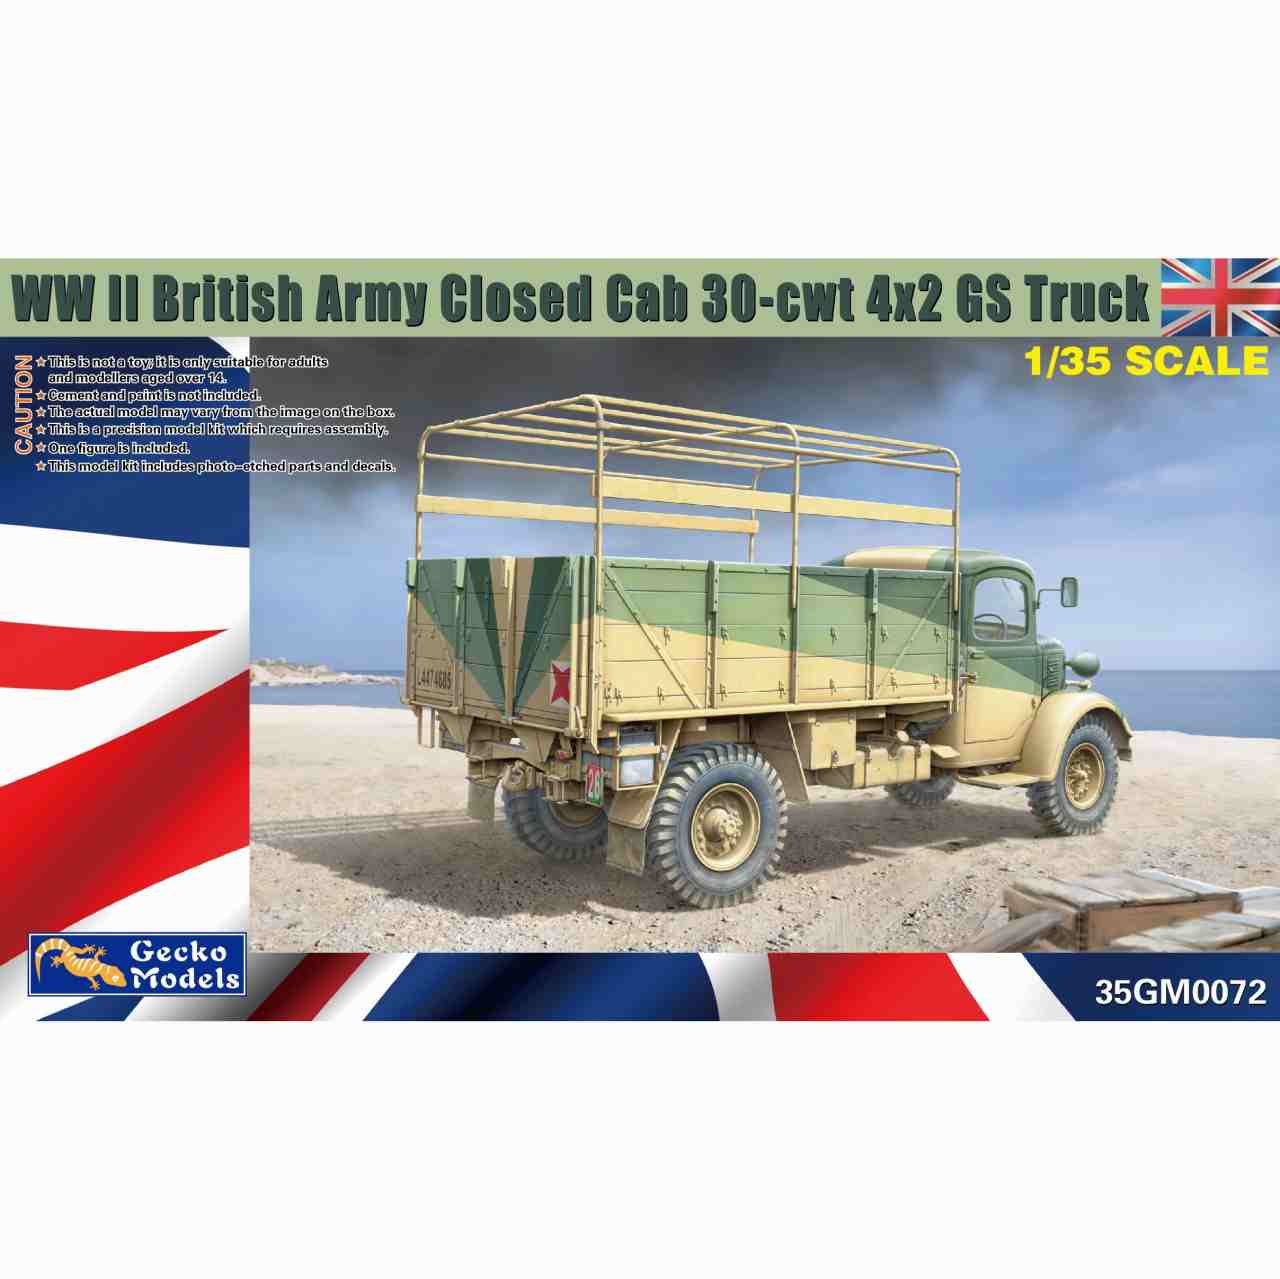 【新製品】35GM0072 1/35 WWII イギリス陸軍 30-cwt 4x2 GSトラック (クロースドキャブタイプ)